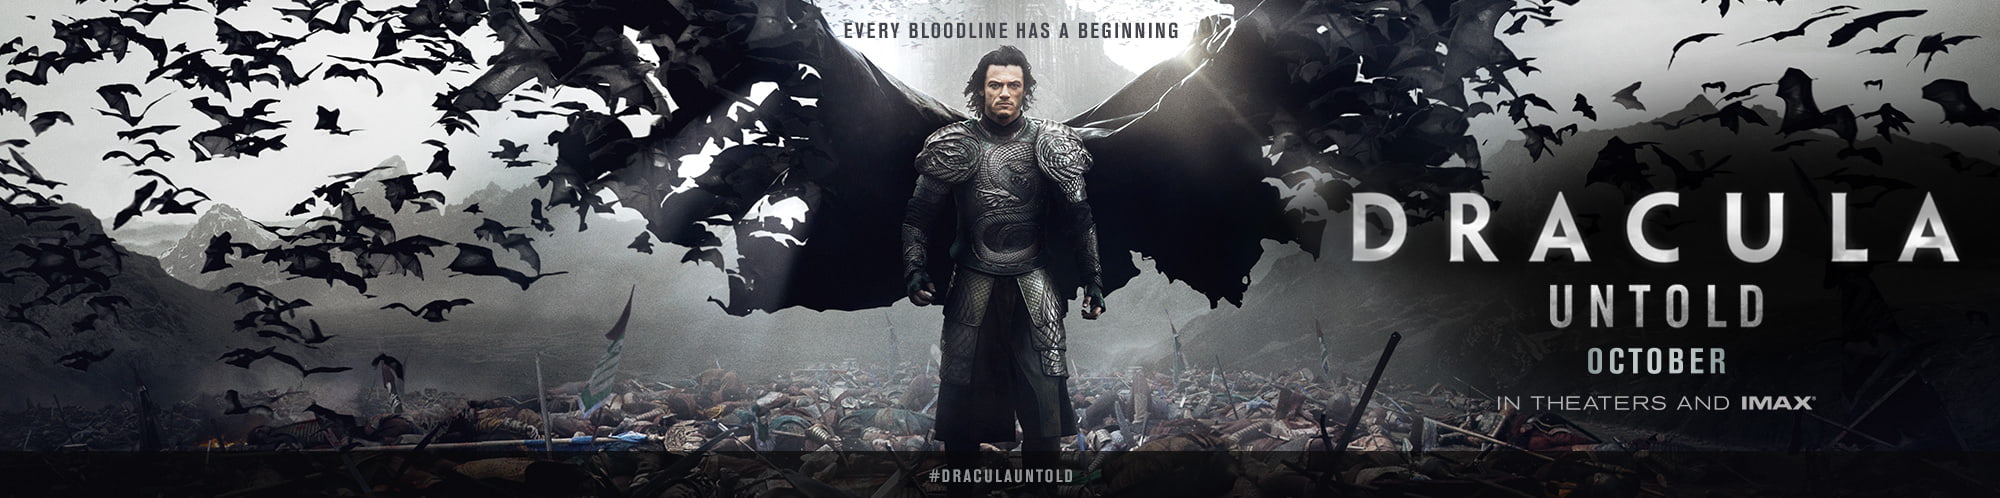 Dracula Untold 4K 2014 big poster